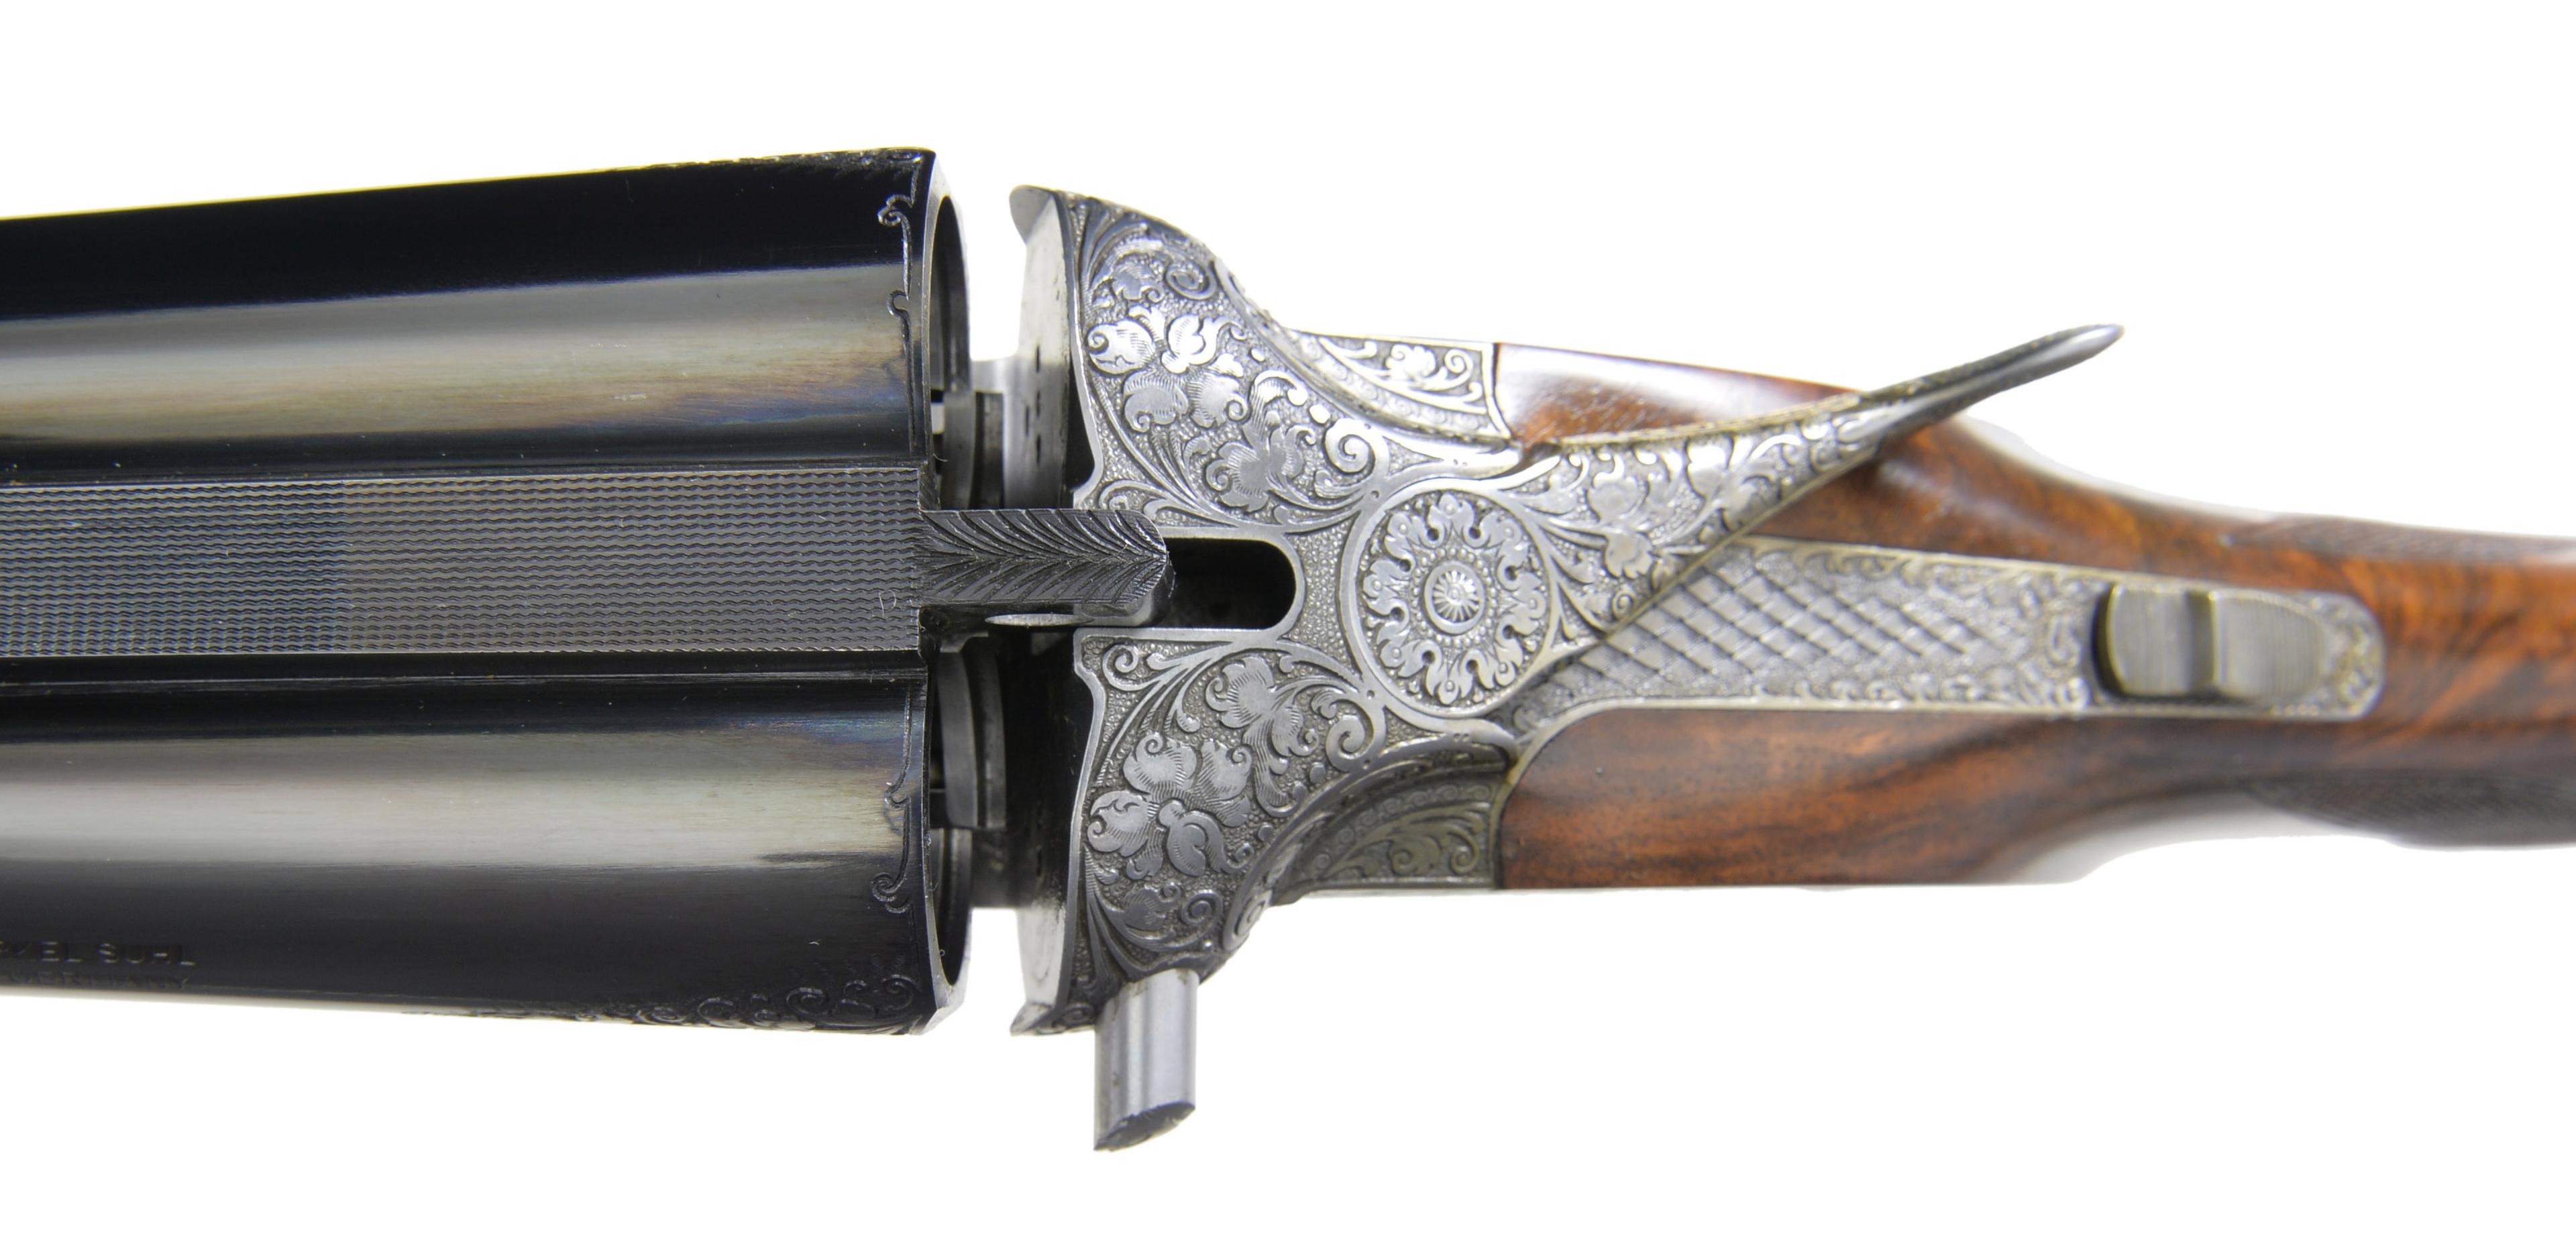 MERKEL MODEL 122 SPECIAL SHOW GUN SXS SHOTGUN.